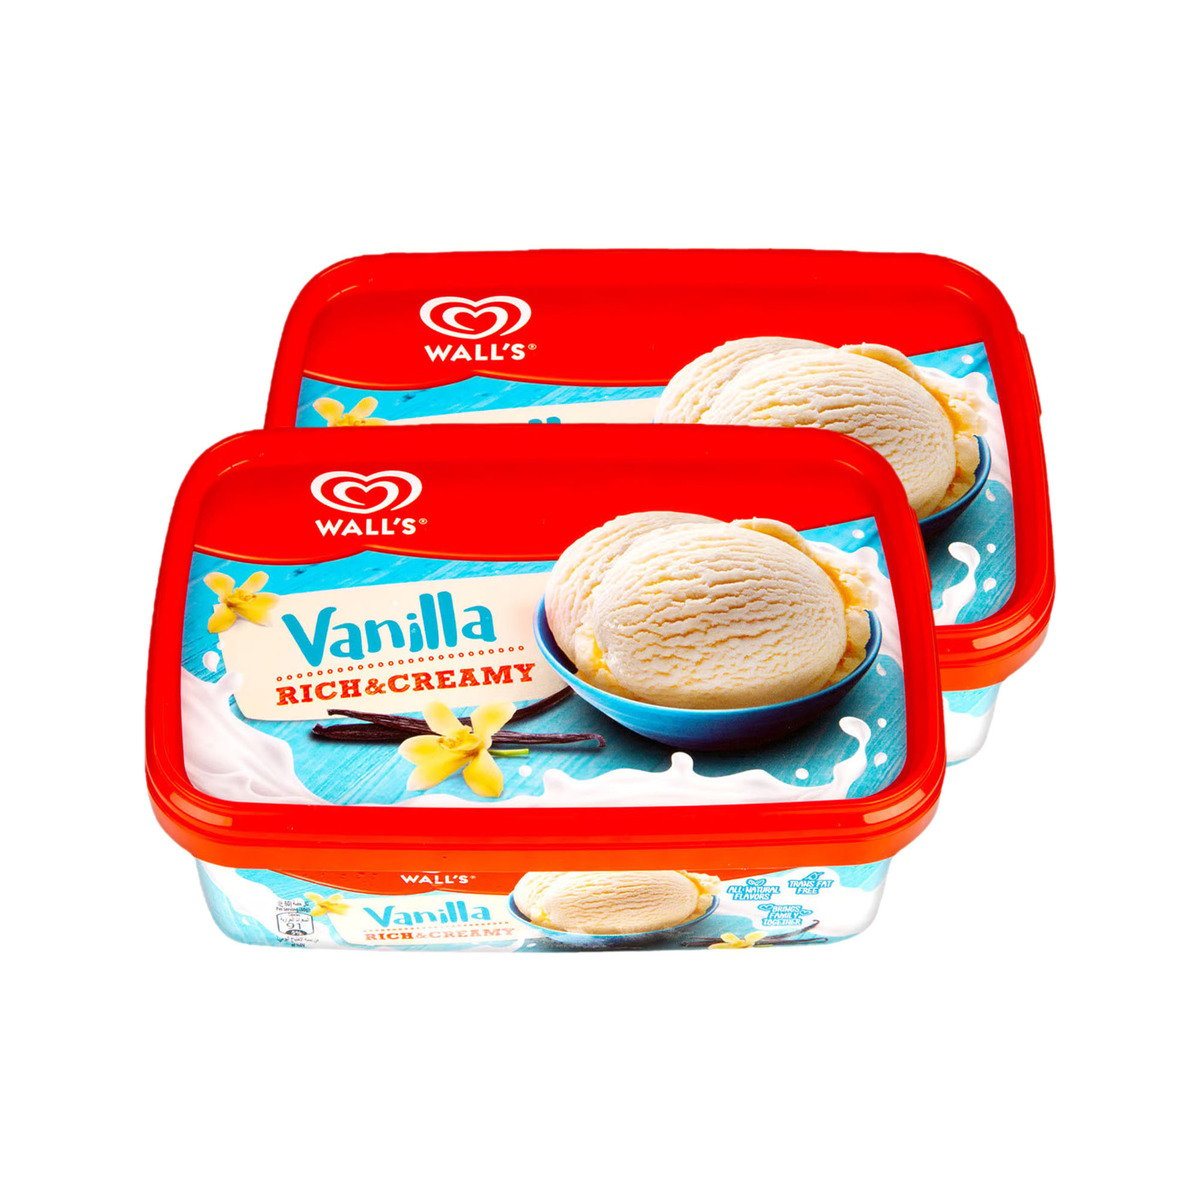 Wall's Rich & Creamy Vanilla Ice Cream 2 x 1 Litre